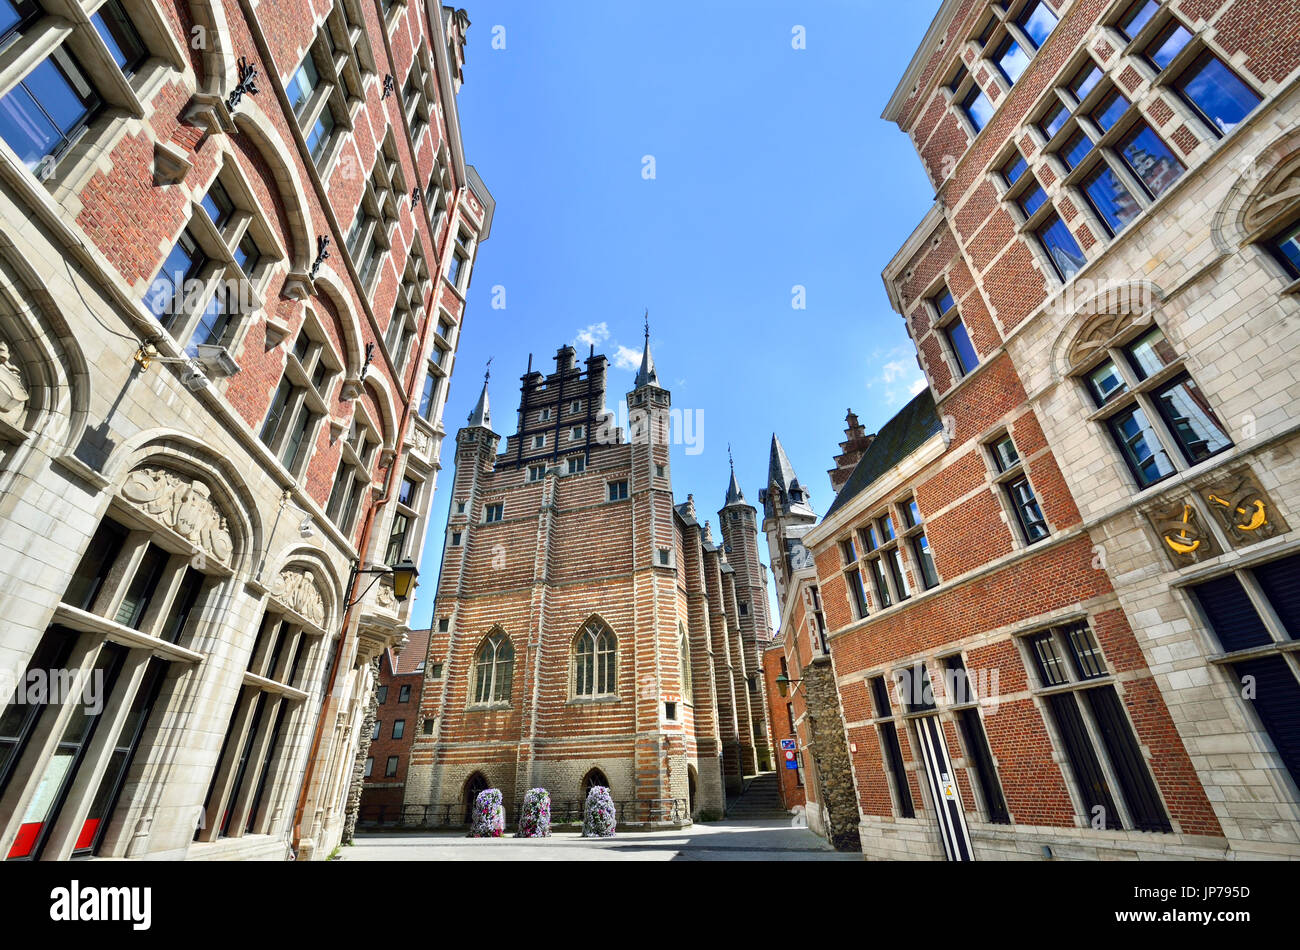 Antwerpen, Belgien. Vleeshuis / Fleischerhalle (1504: Herman de Waghemakere) von Vleeshuisstraat (Straße) Guildhall mit Bänken für 62 Metzger t gesehen Stockfoto